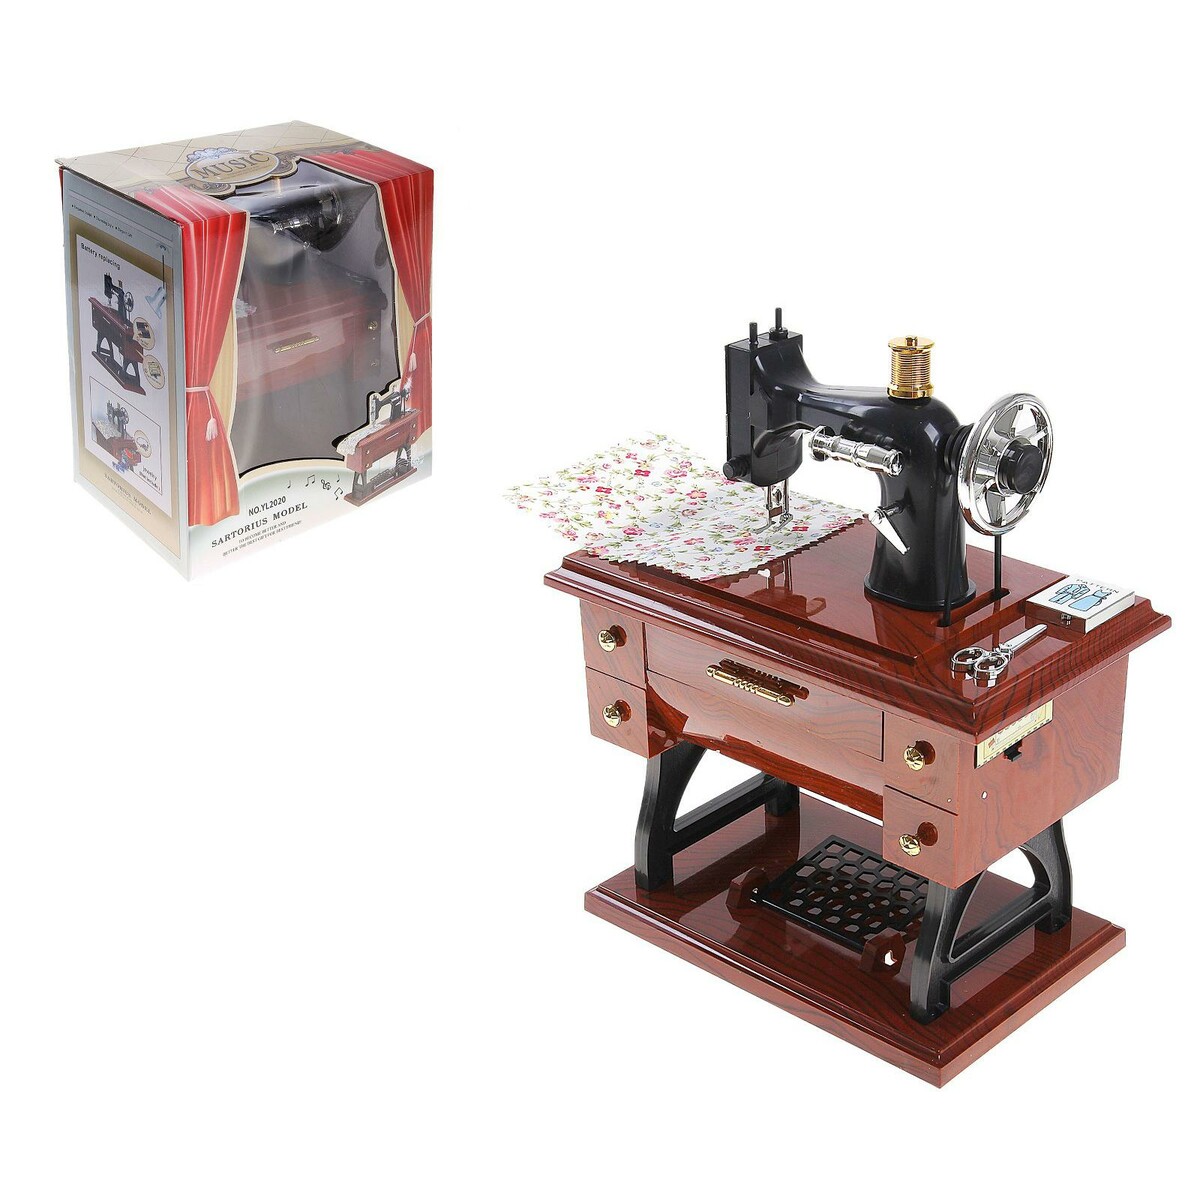 Машинка швейная шкатулка швейная машинка galaxy line gl6501